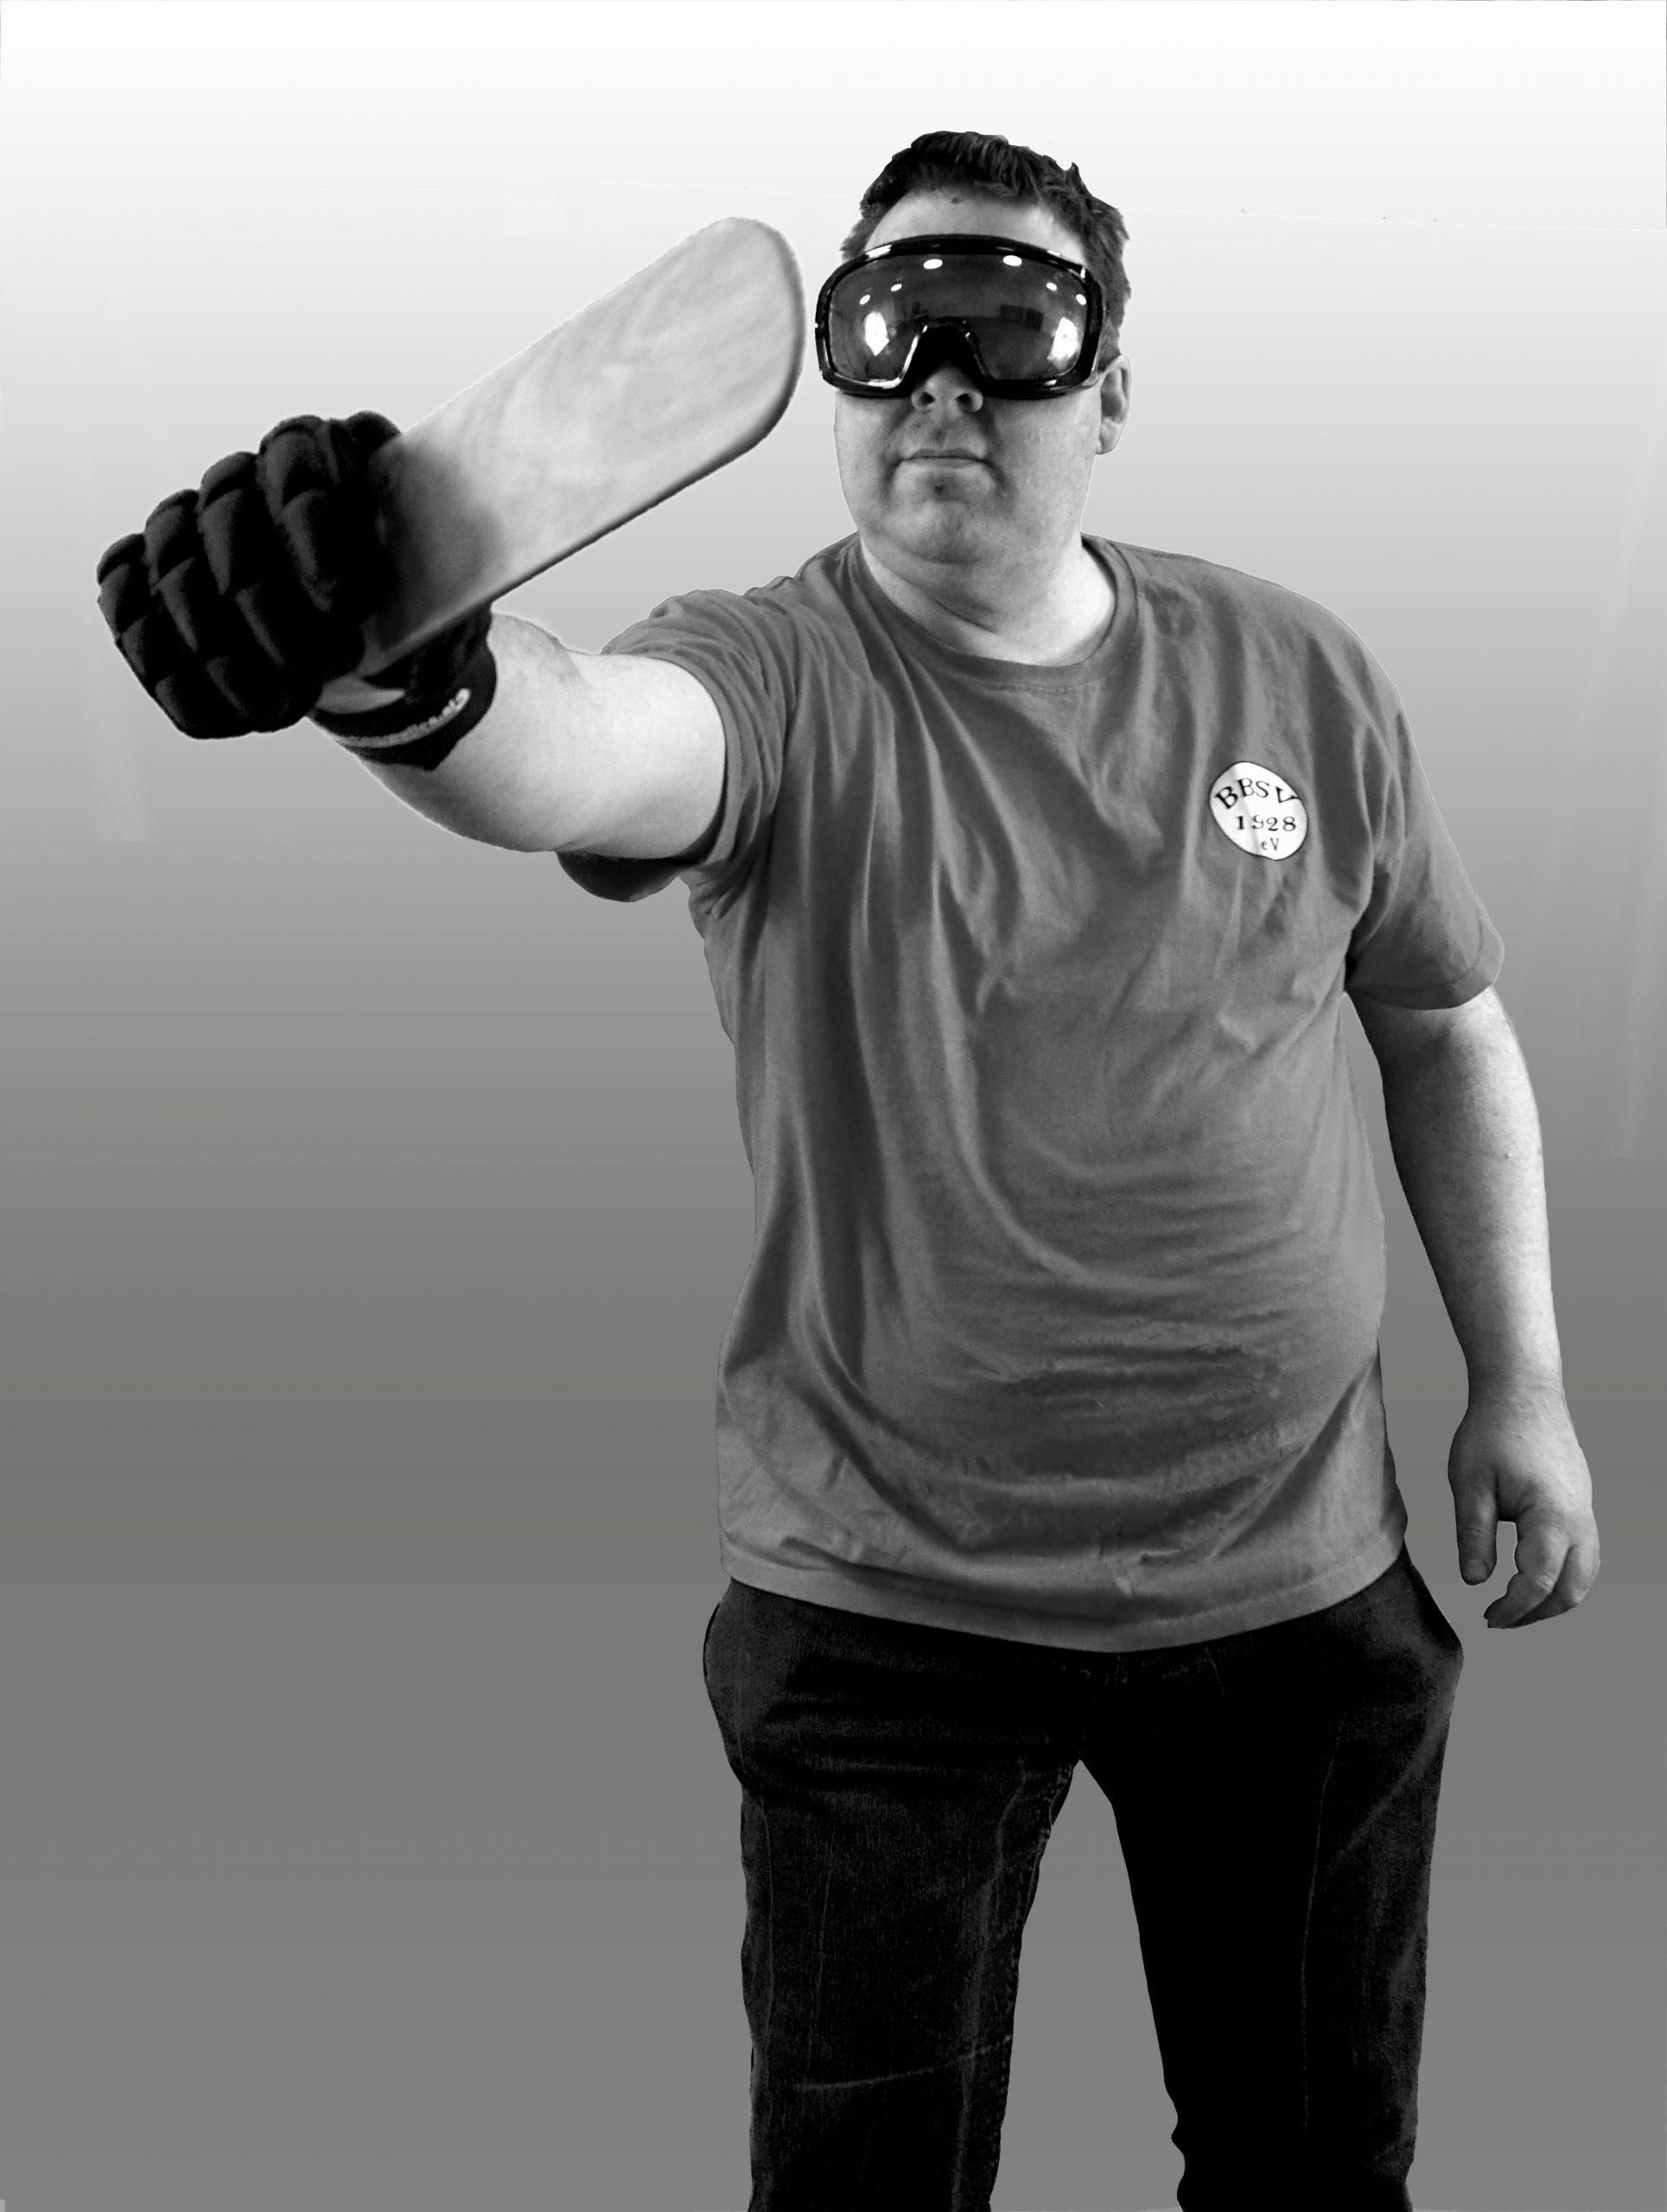 Matthias Hübner hält in seiner rechten Hand einen Showdown-Schläger. Er trägt an dieser Hand einen schwarzen, festen Handschuh. Den Arm streckt er aus. Außerdem trägt er eine verdunkelte Skibrille und ein T-Shirt des BBSV.